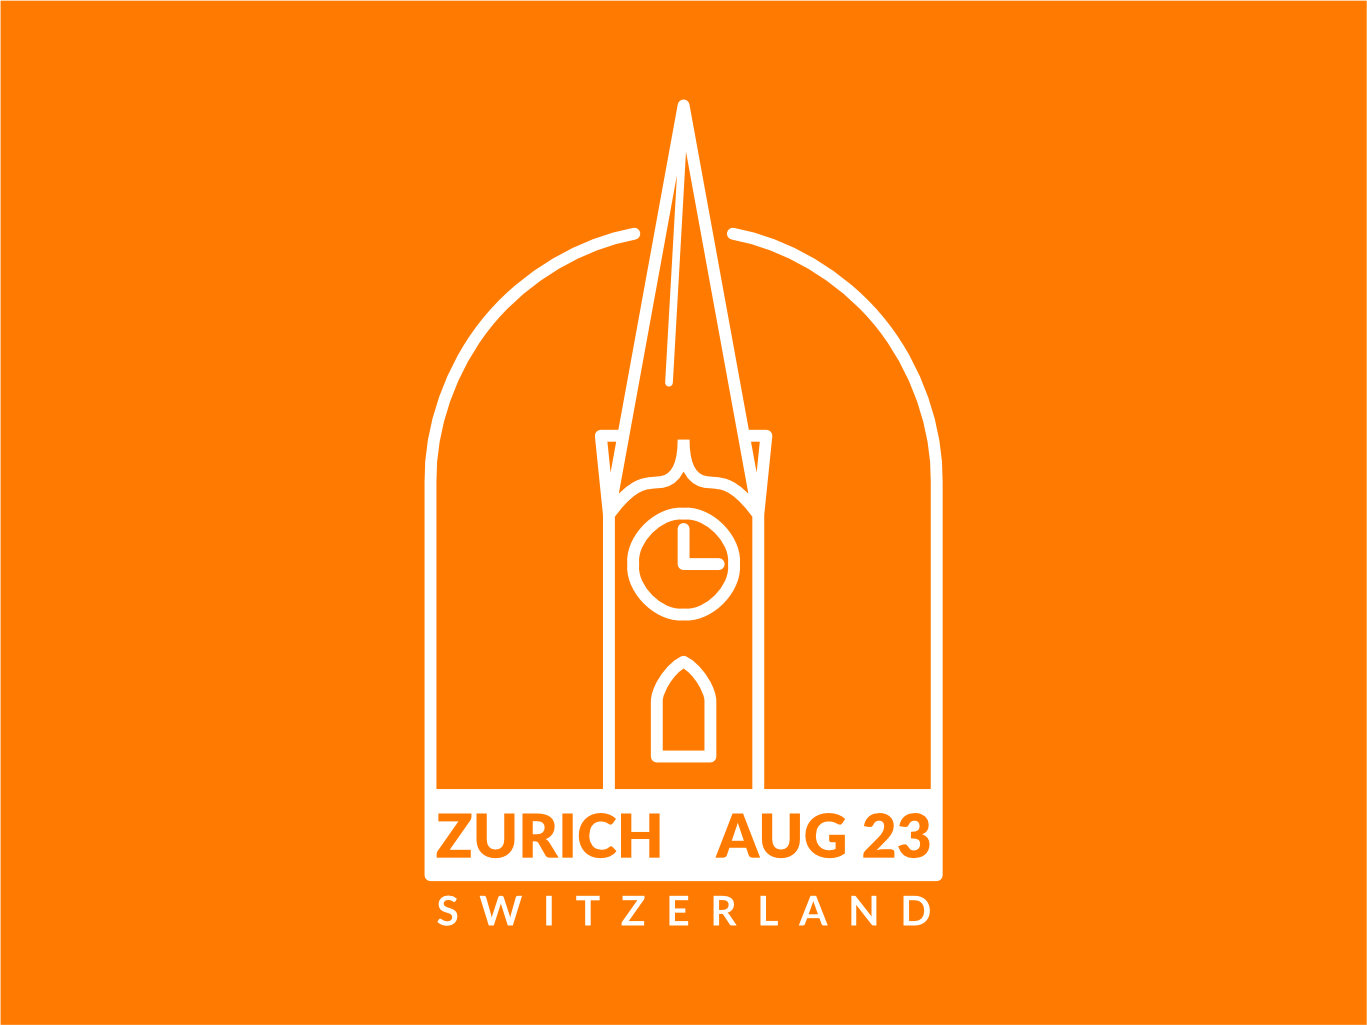 Passport style stamp for Zurich